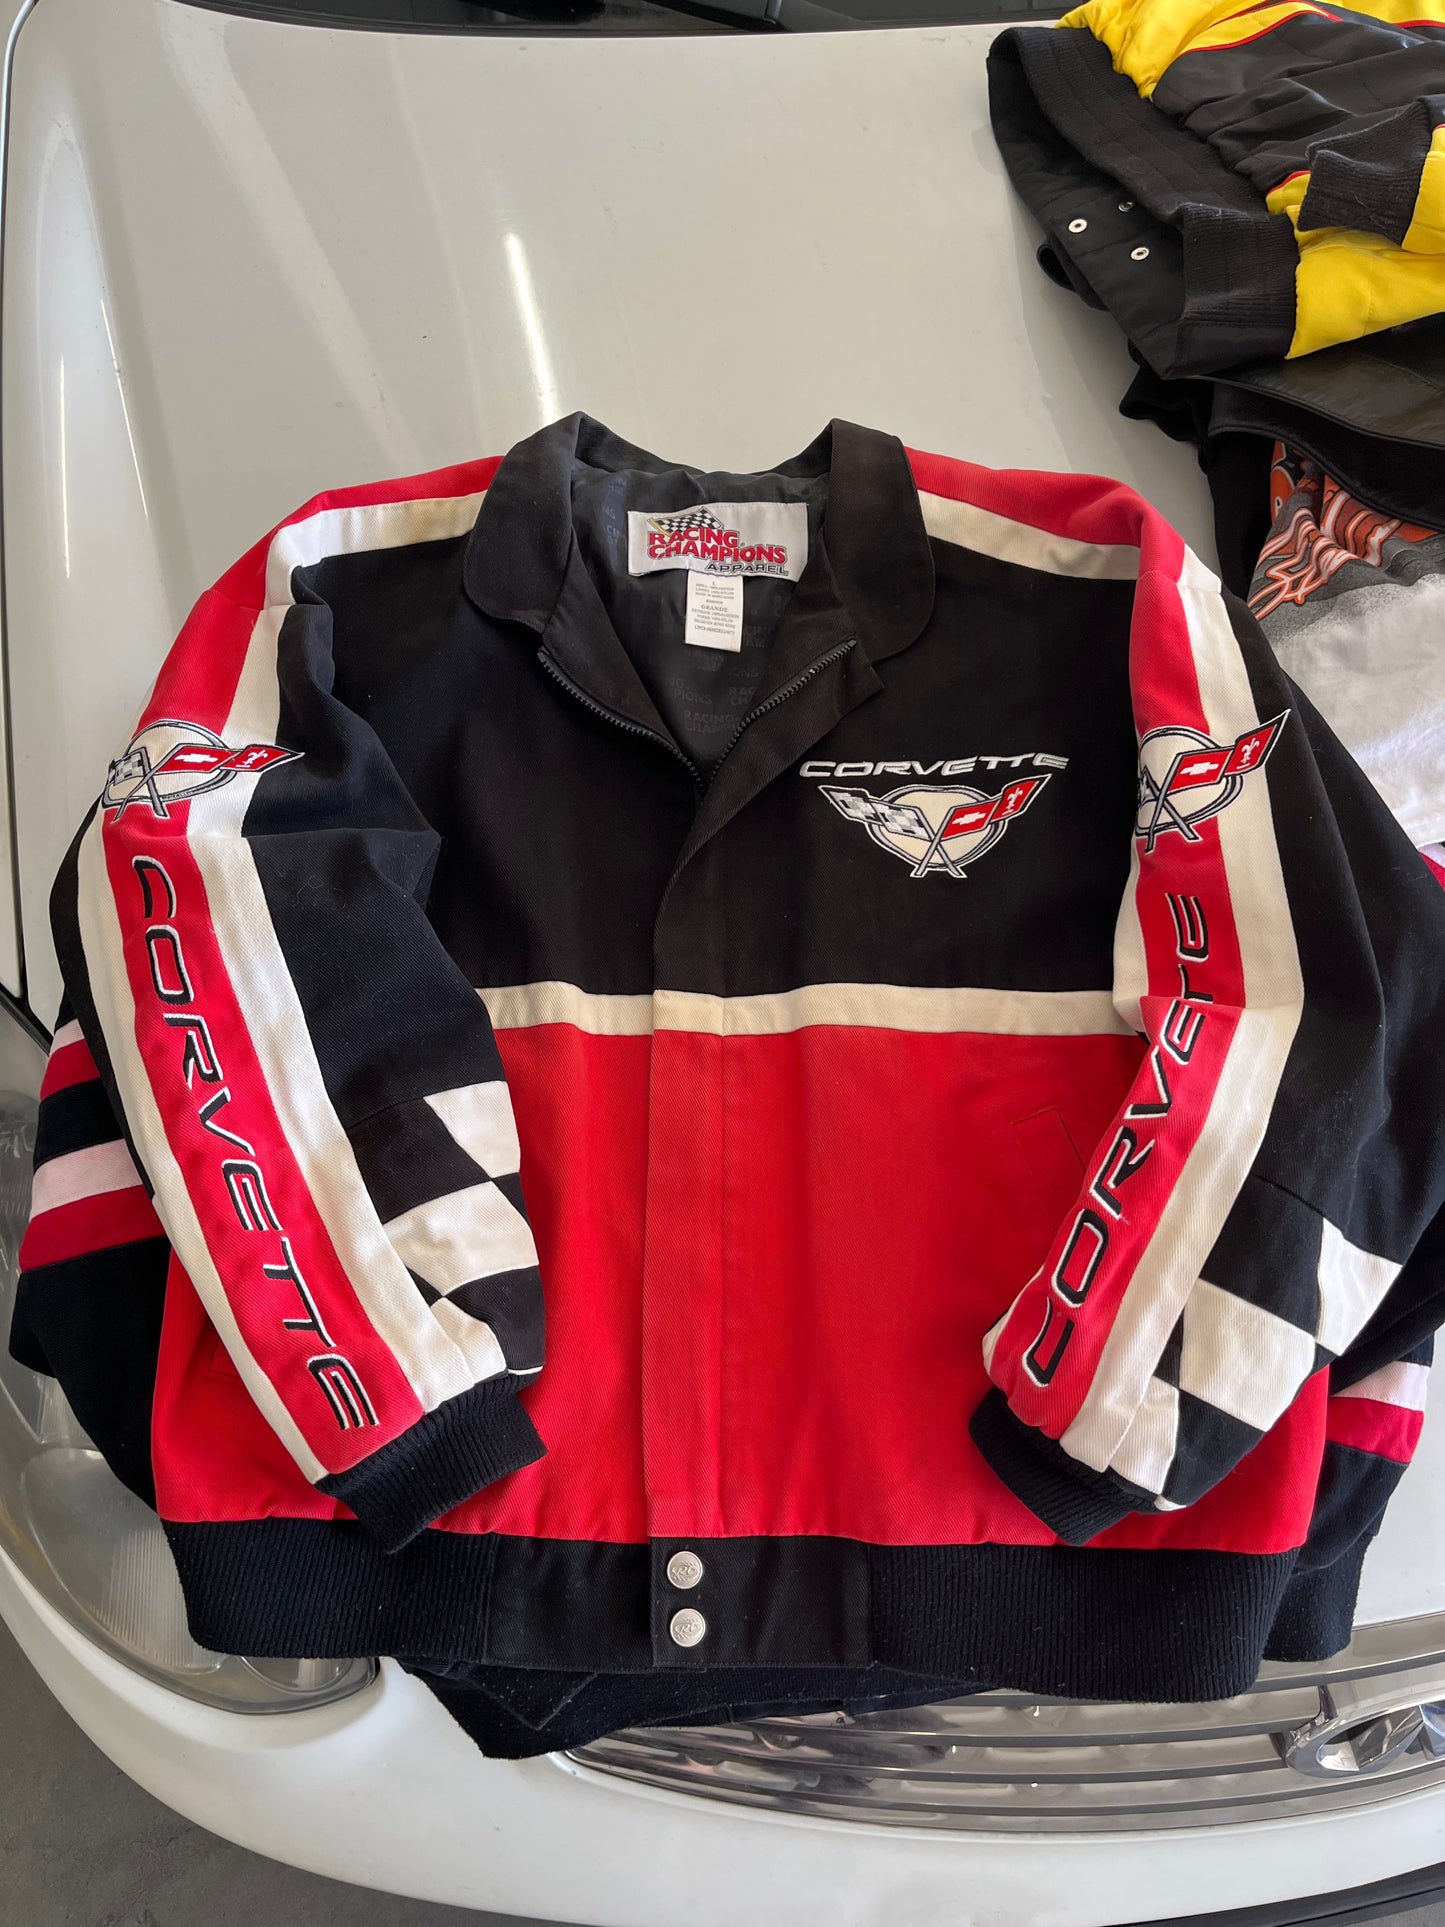 90s Corvette Racing Jacket